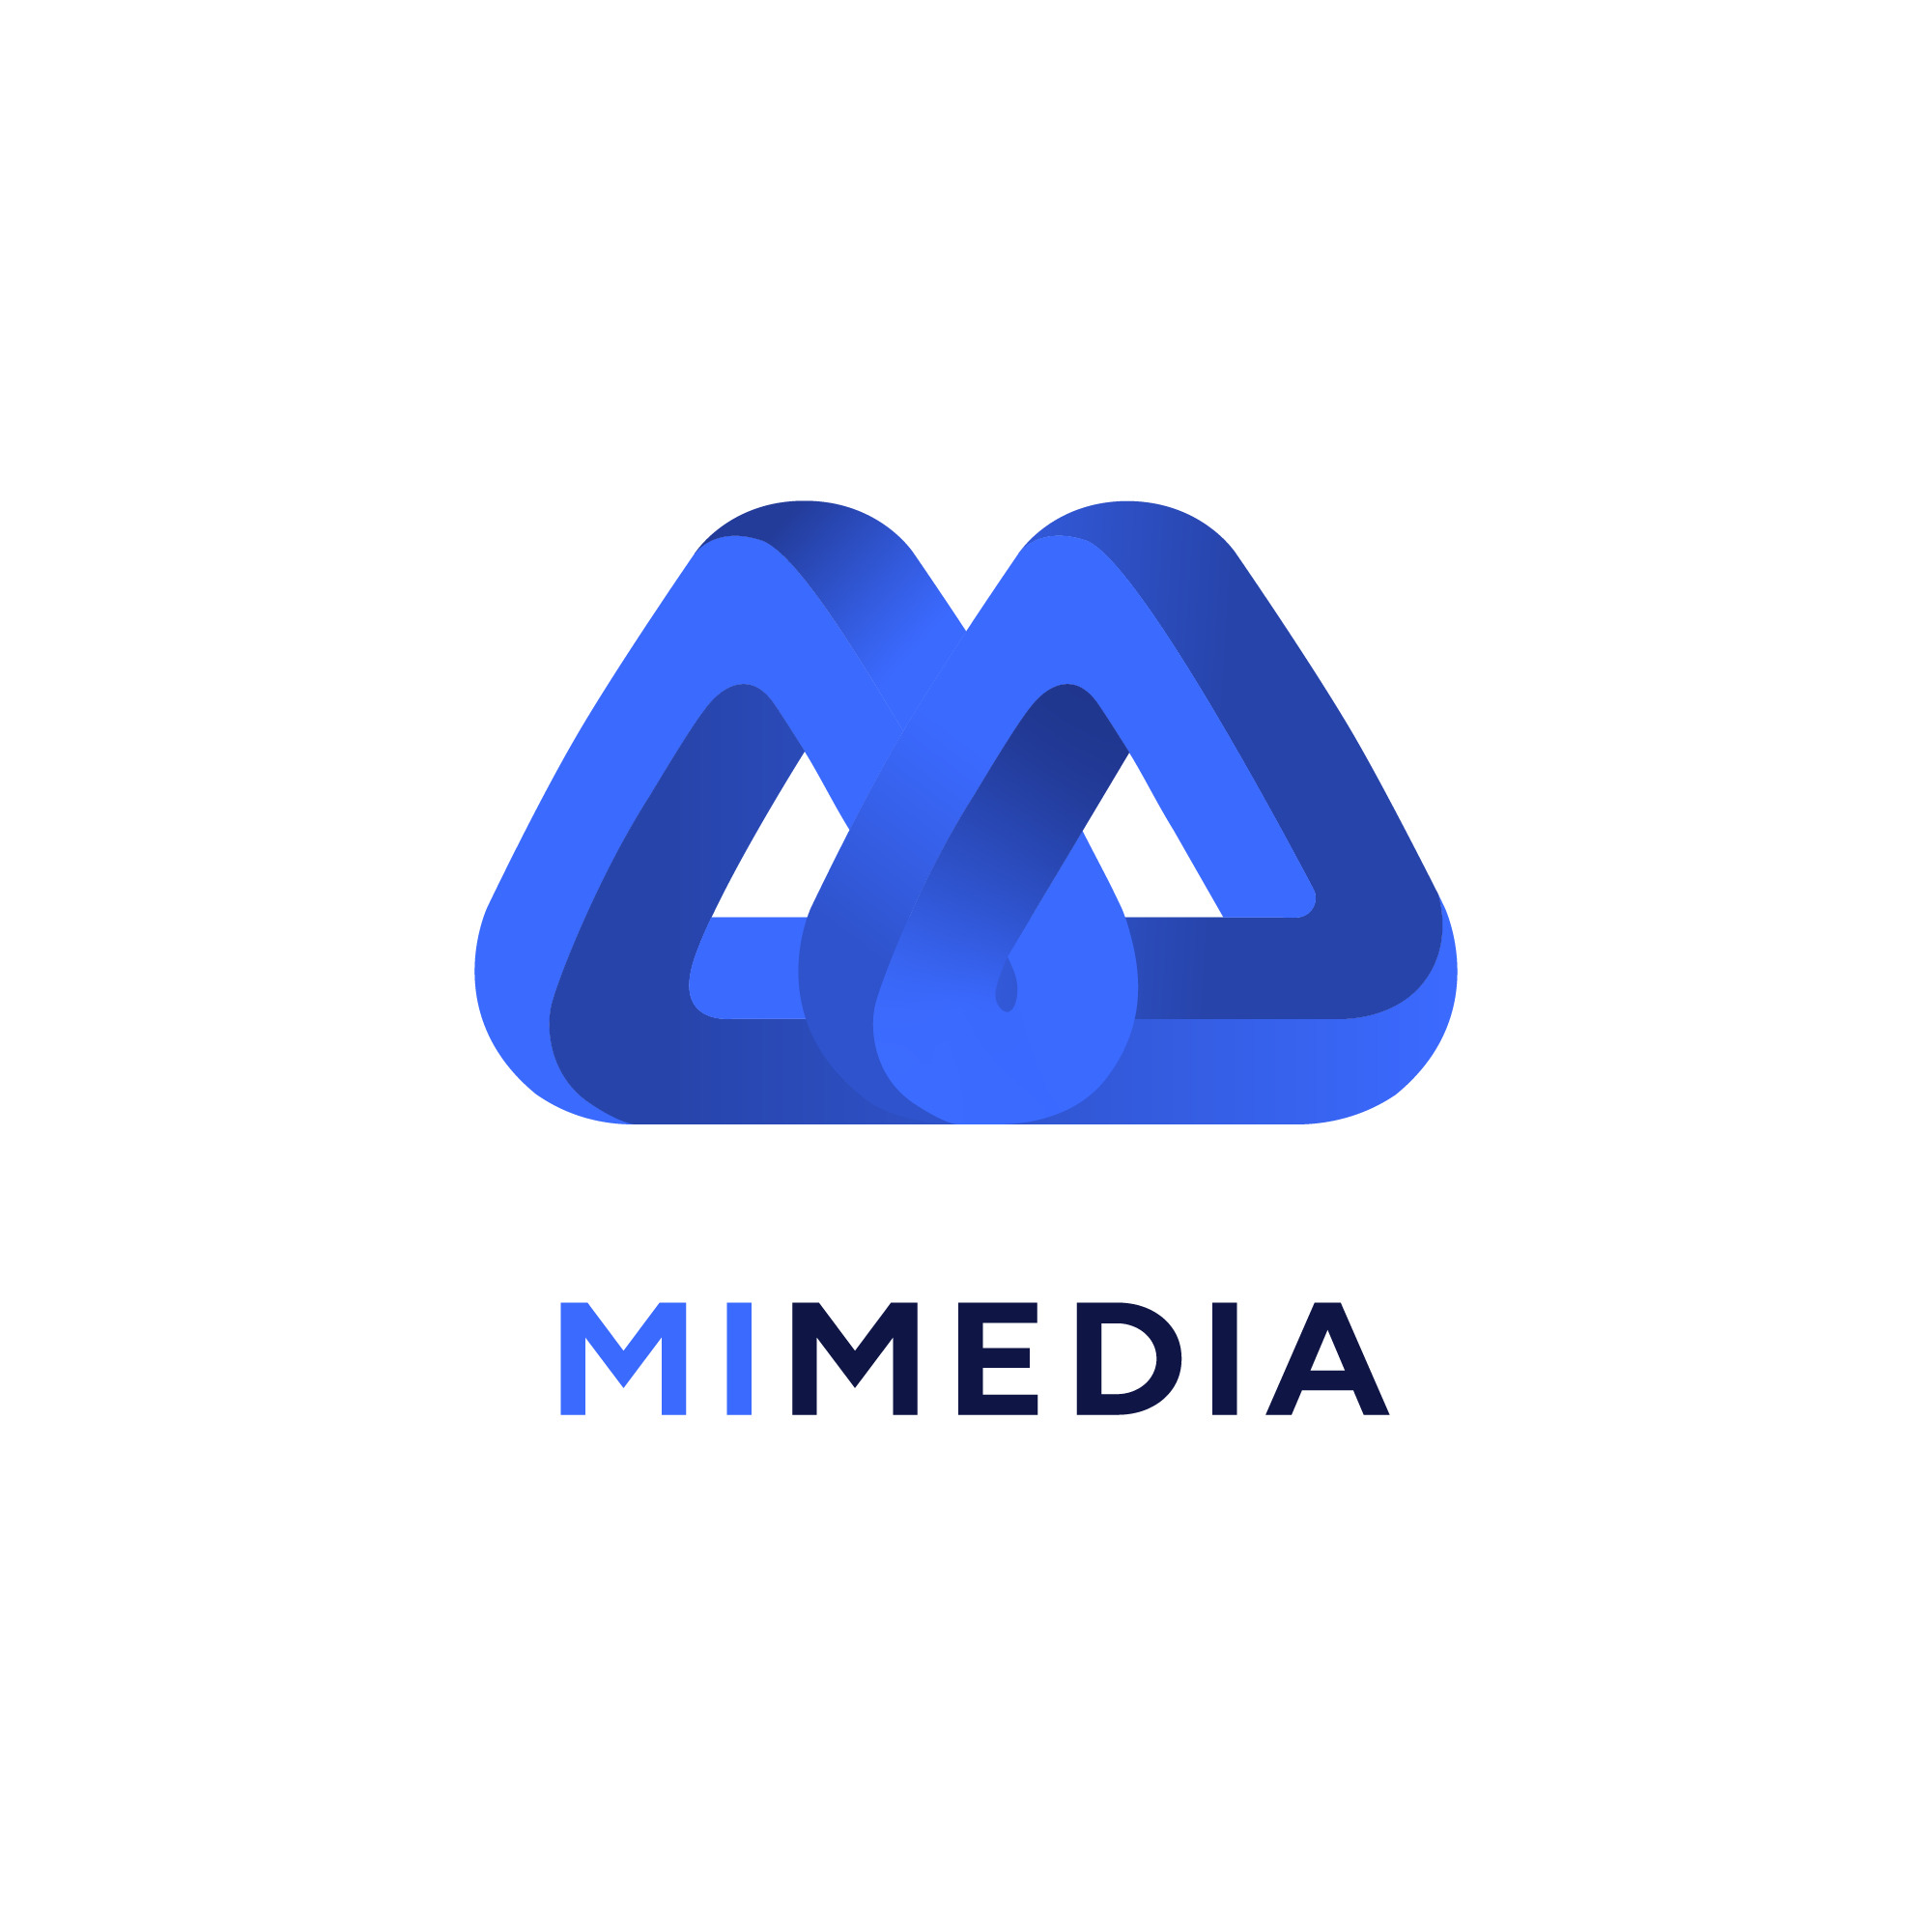 MI Media_LogoStacked.png